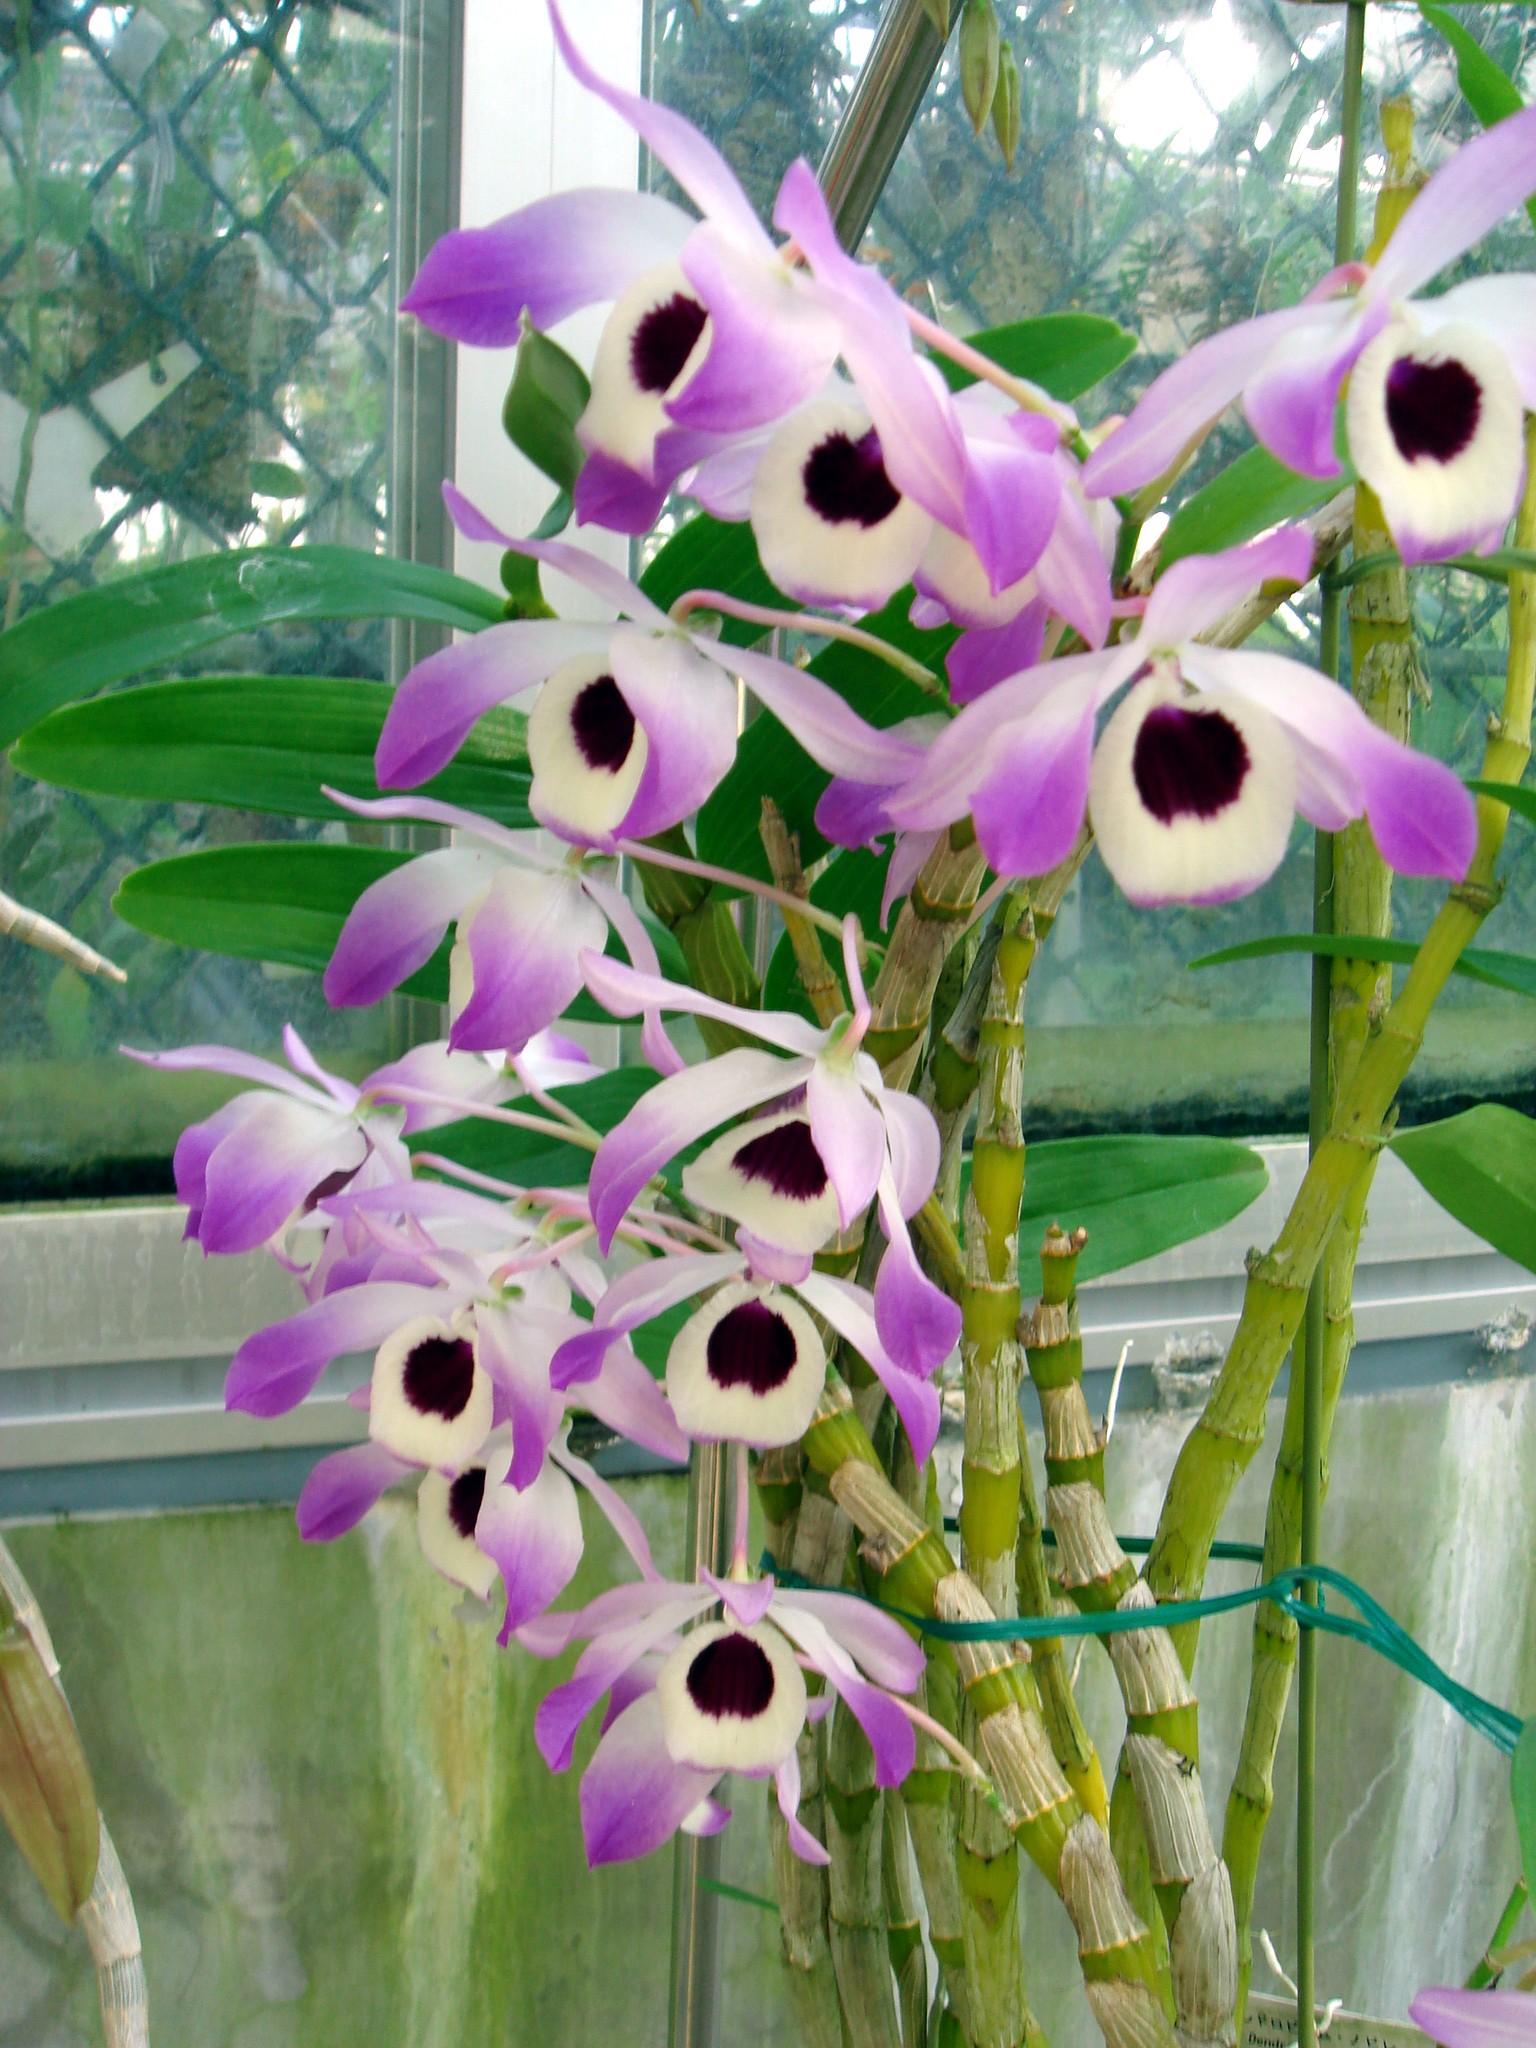 http://orchids.la.coocan.jp/Dendrobium/Dendrobium%20nobile/DSC03905.JPG